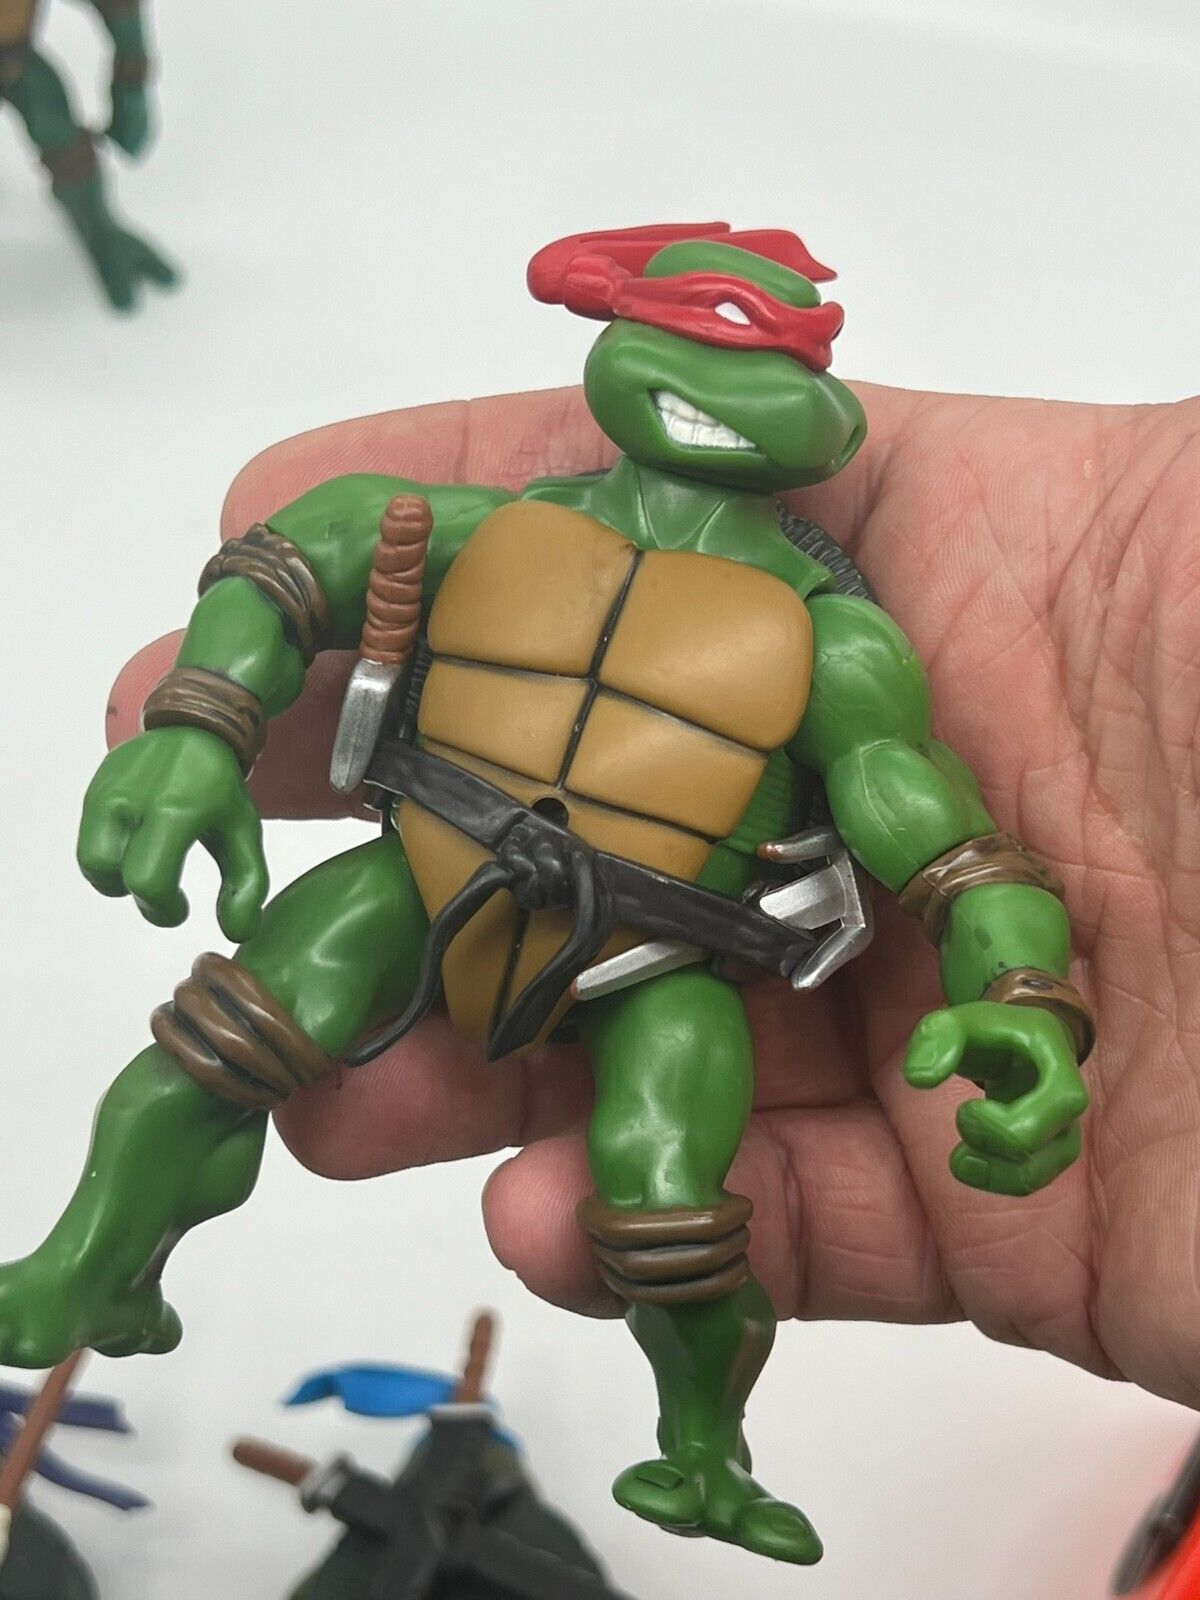 Lot (4) TMNT Teenage Mutant Ninja Turtles Action Figures ~ Mirage Studios 2002